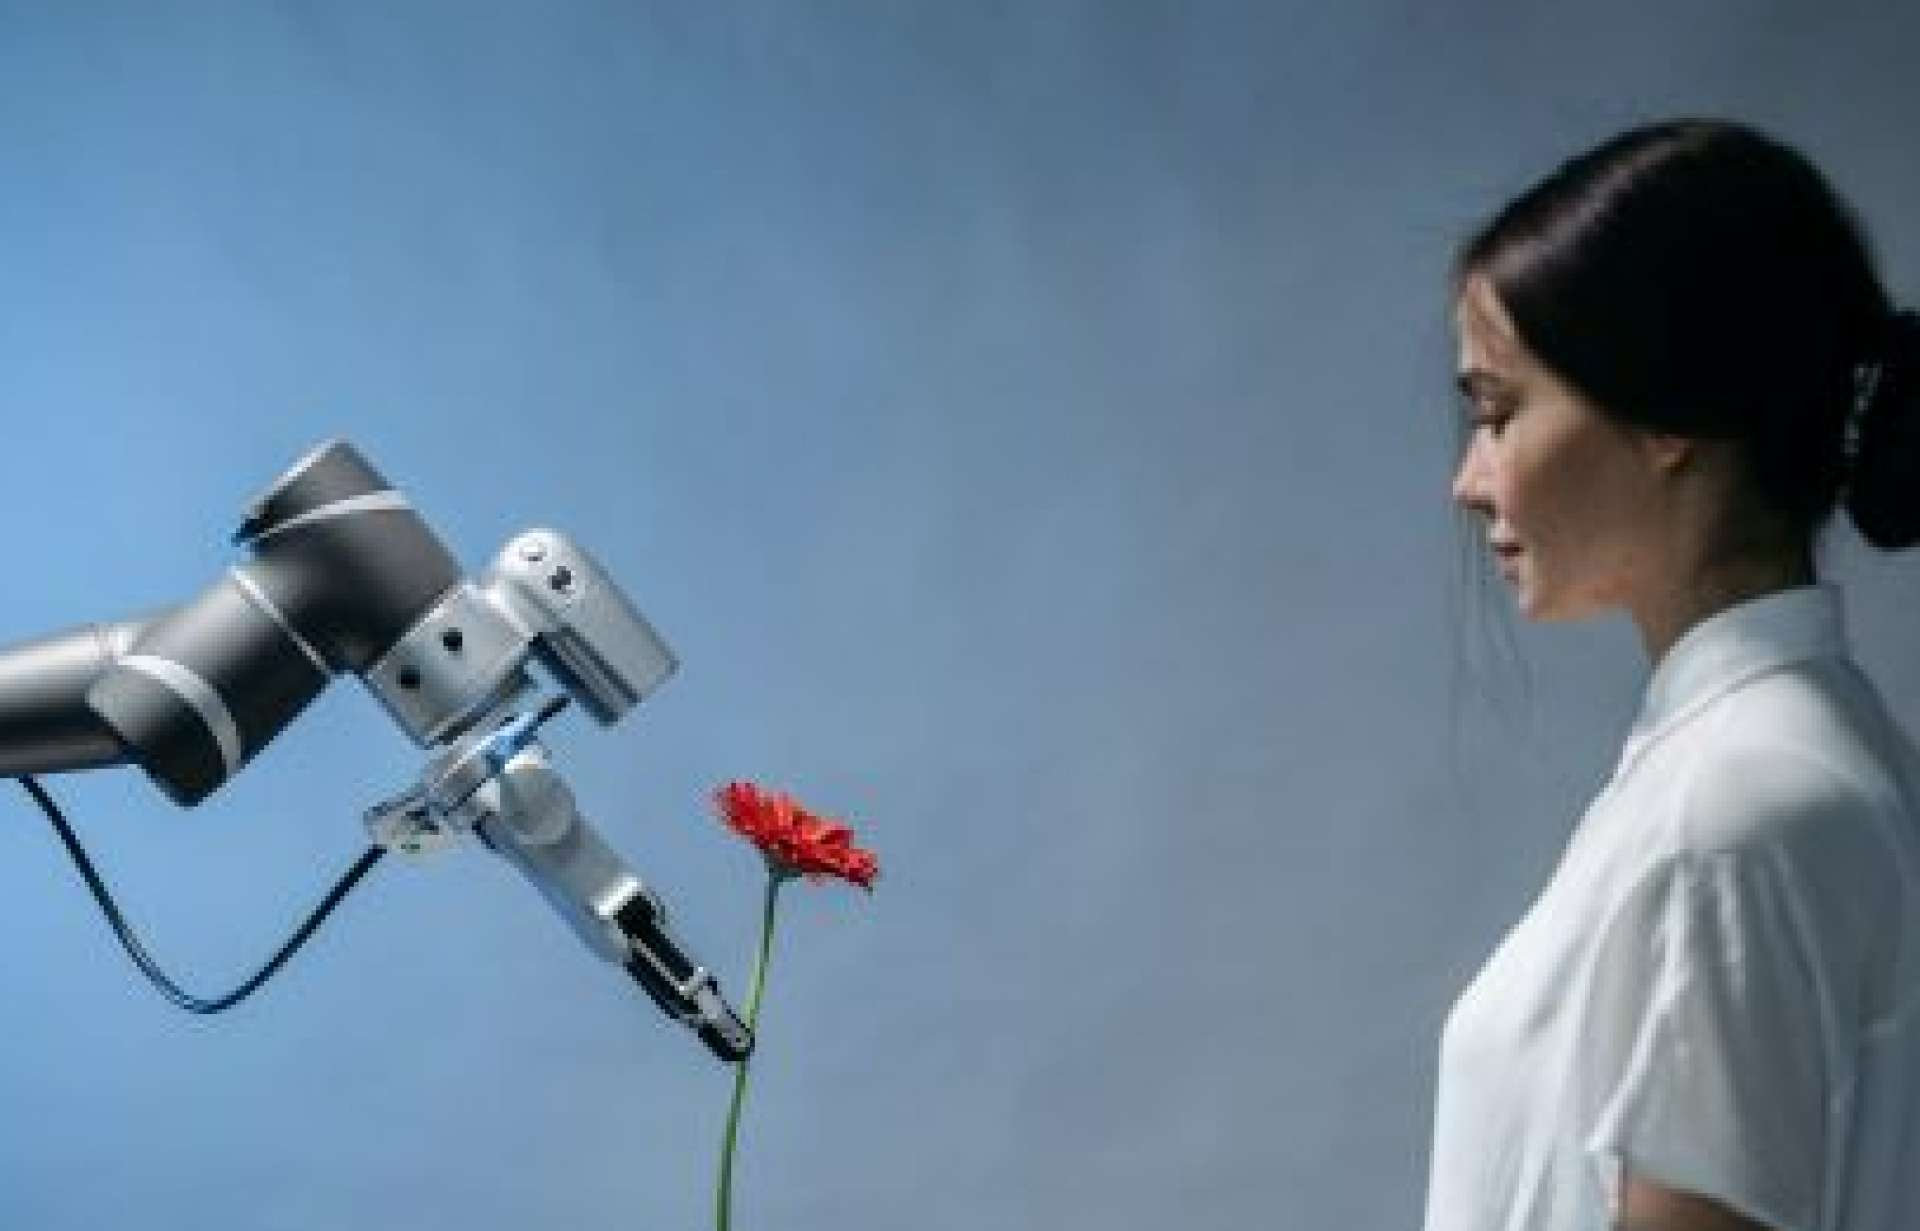 ¿Te quitará un robot tú trabajo? La IA y el futuro del mercado laboral